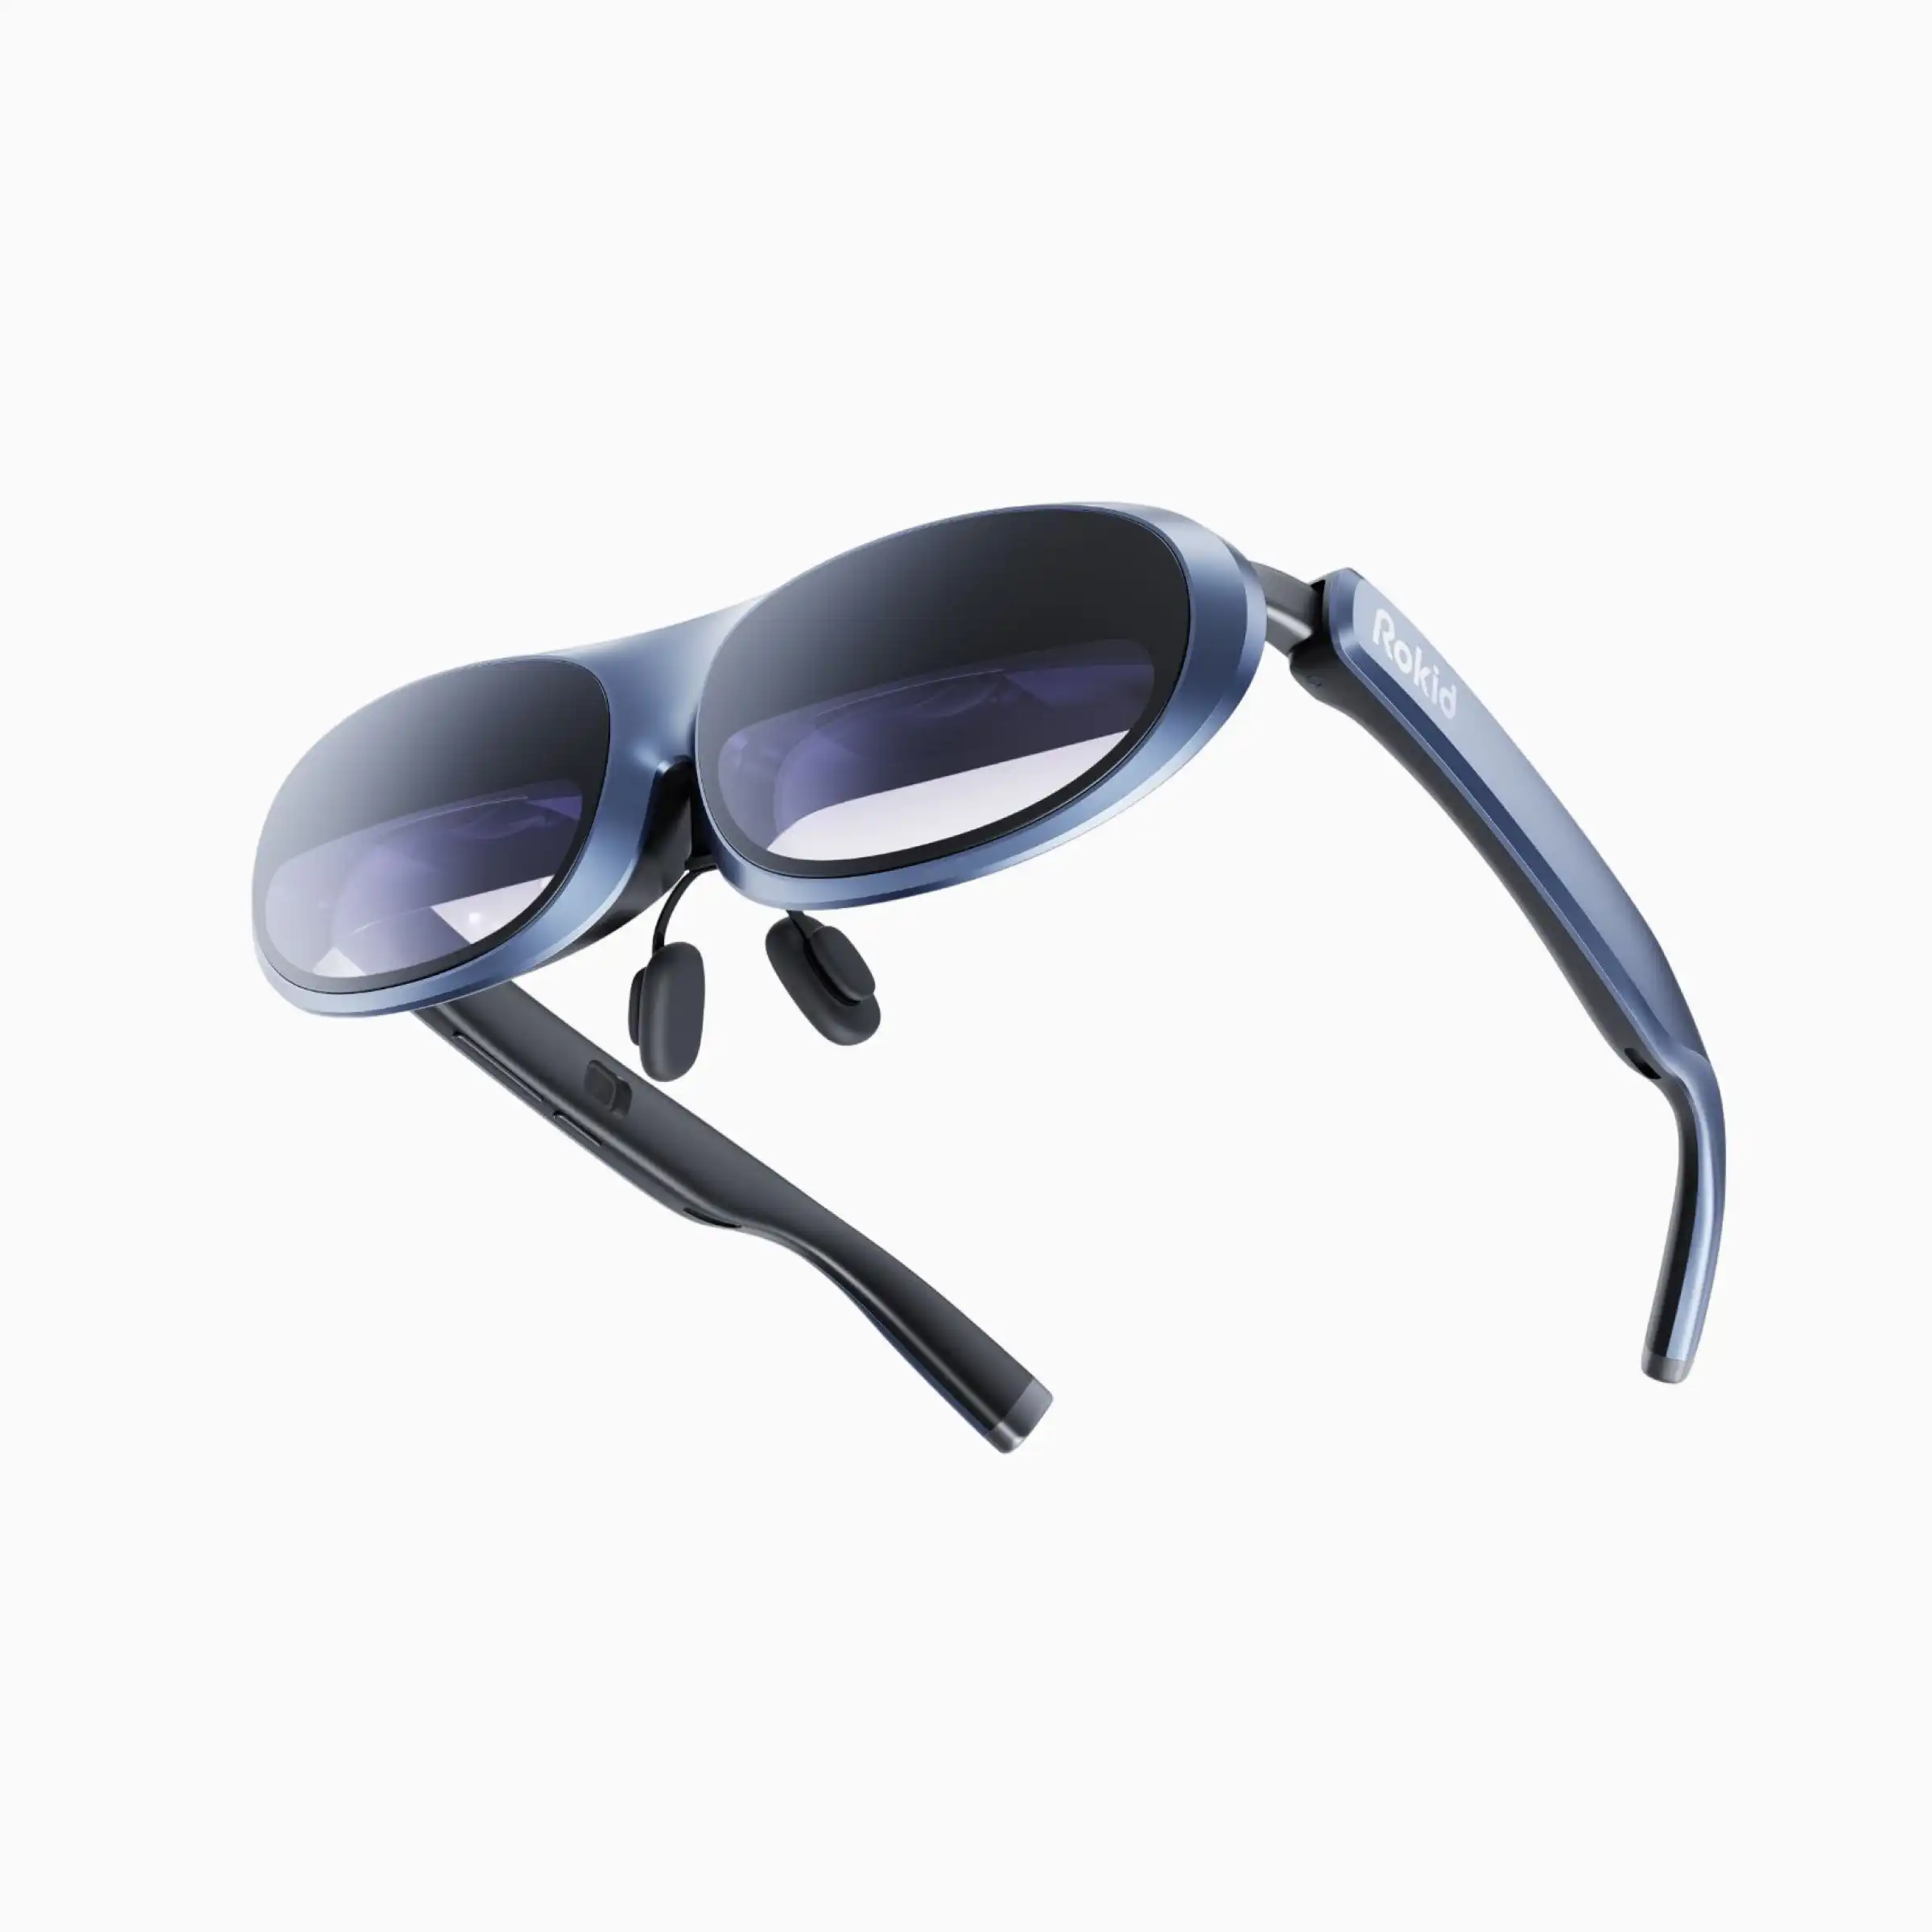 Schlussverkauf Wupro x Rokid Max Ar Brille 3D-Unterstützung 120Hz Neuerungsrate 250 Zoll Bildaufnahme 4K intelligente Meta-AR/VR Brille